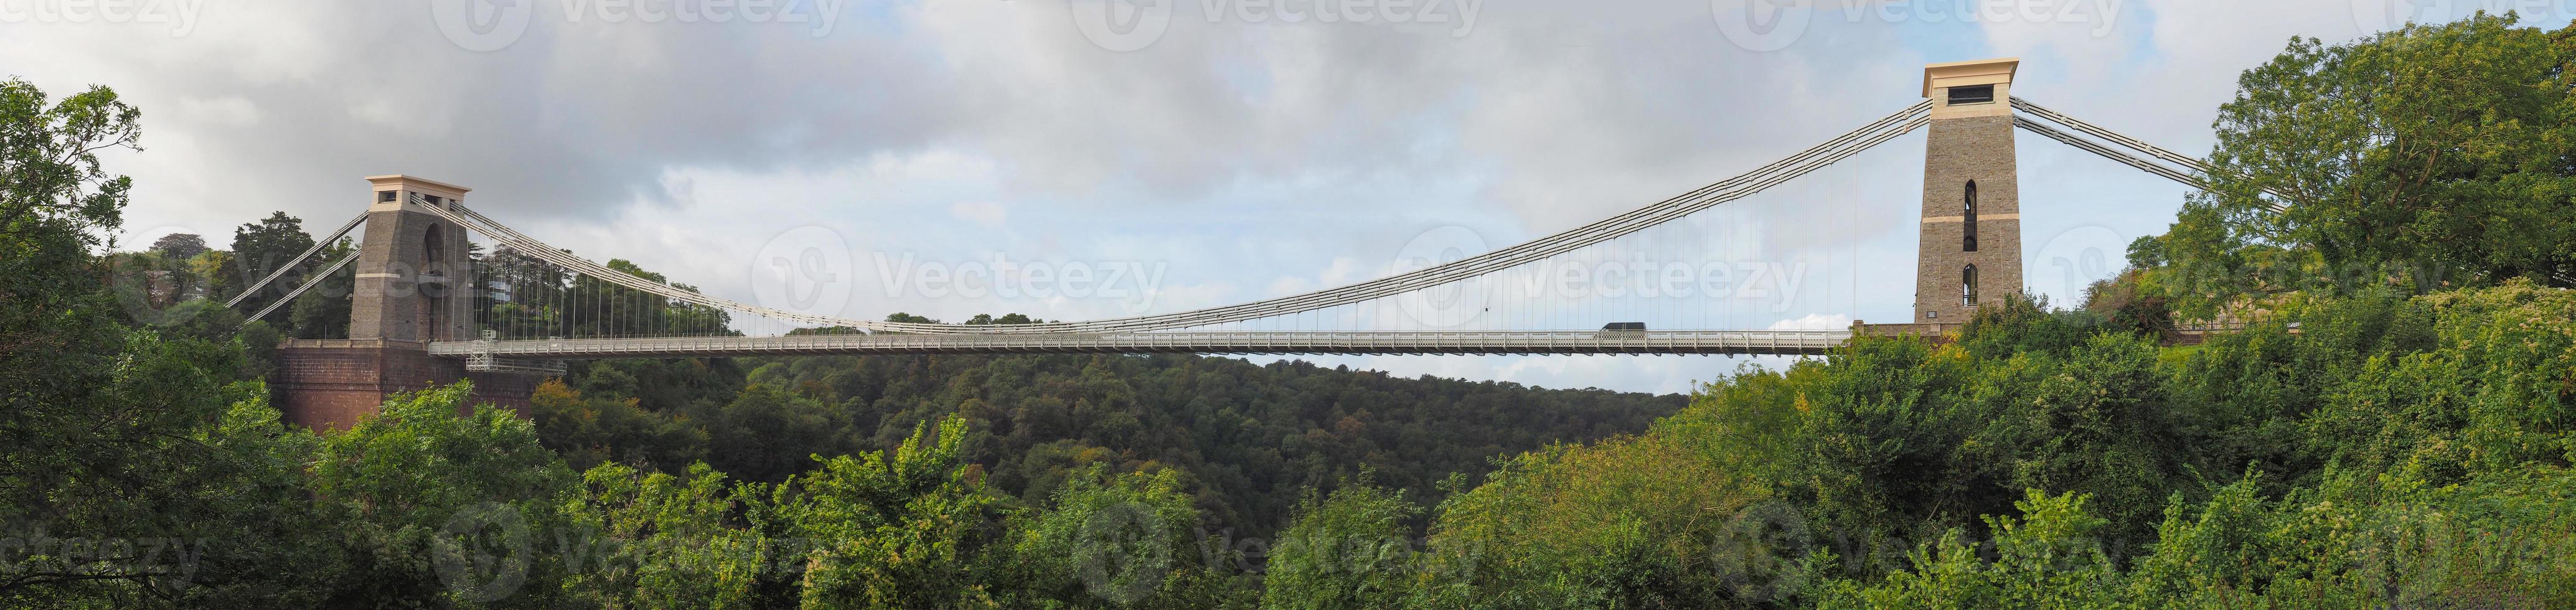 Puente colgante de Clifton en Bristol foto